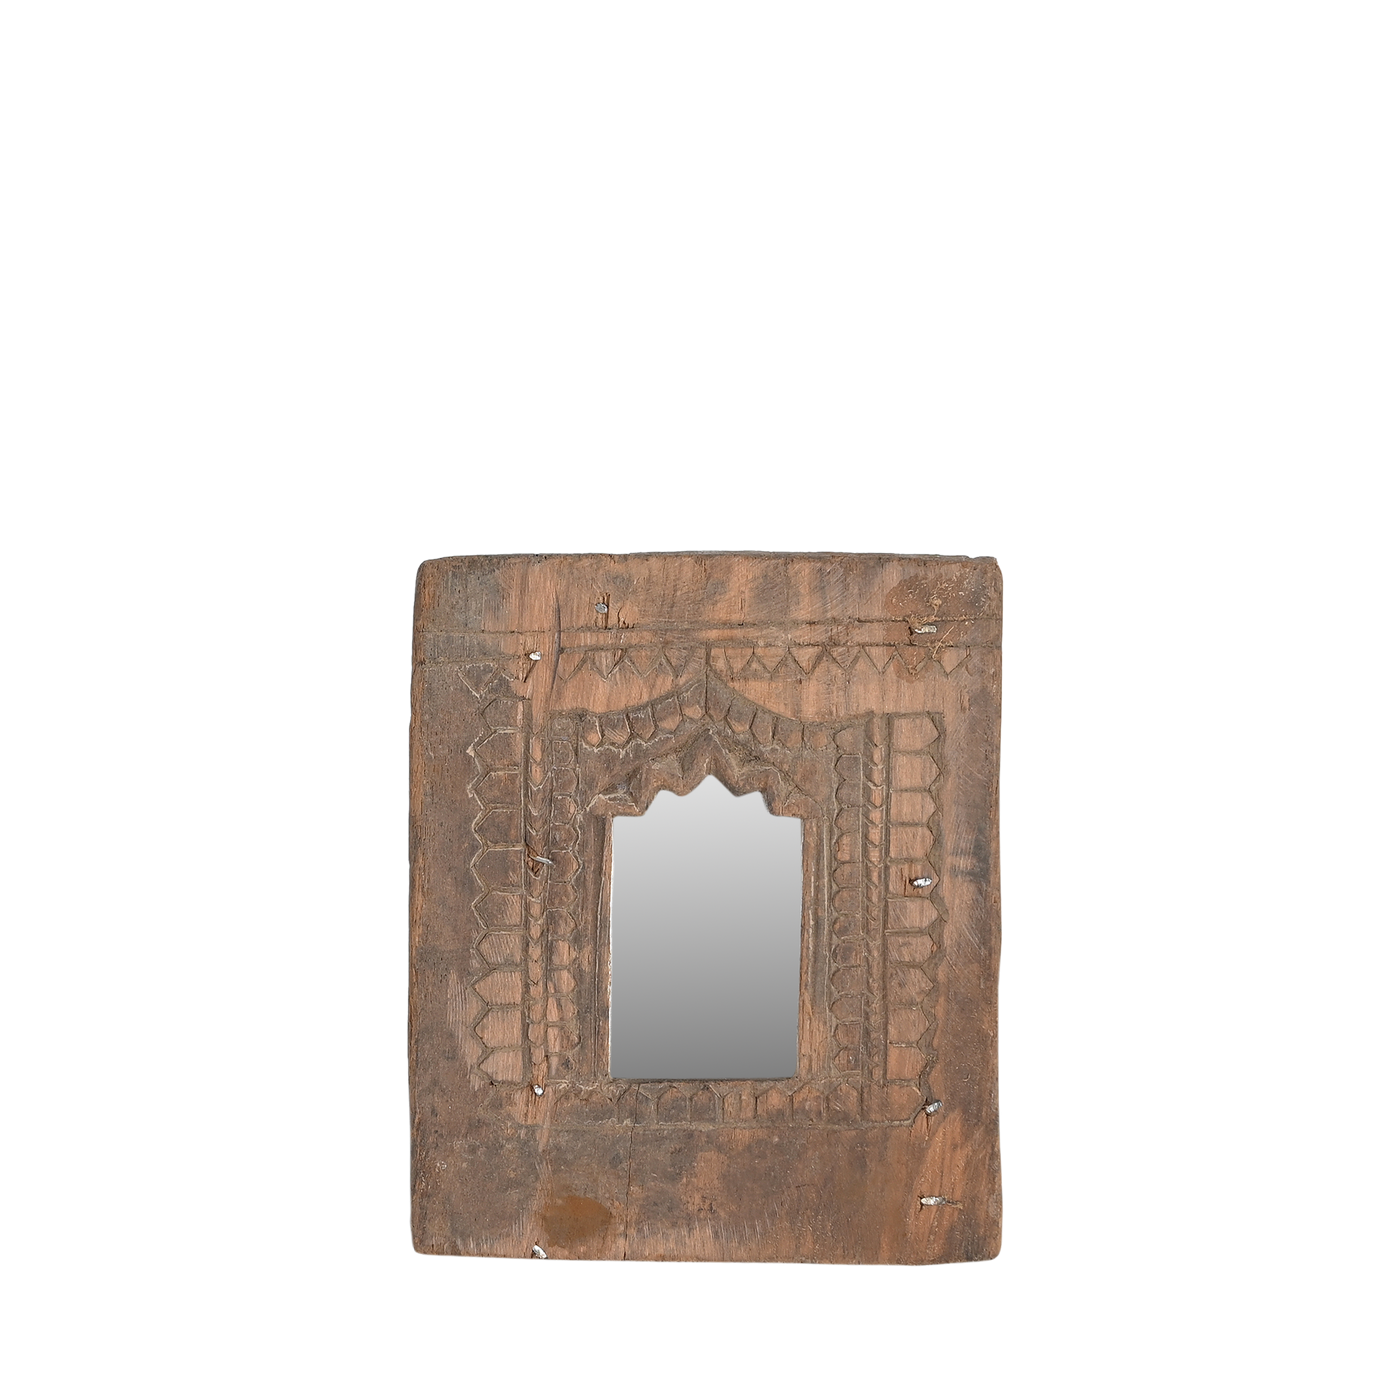 Mandir - Temple mirror n ° 30